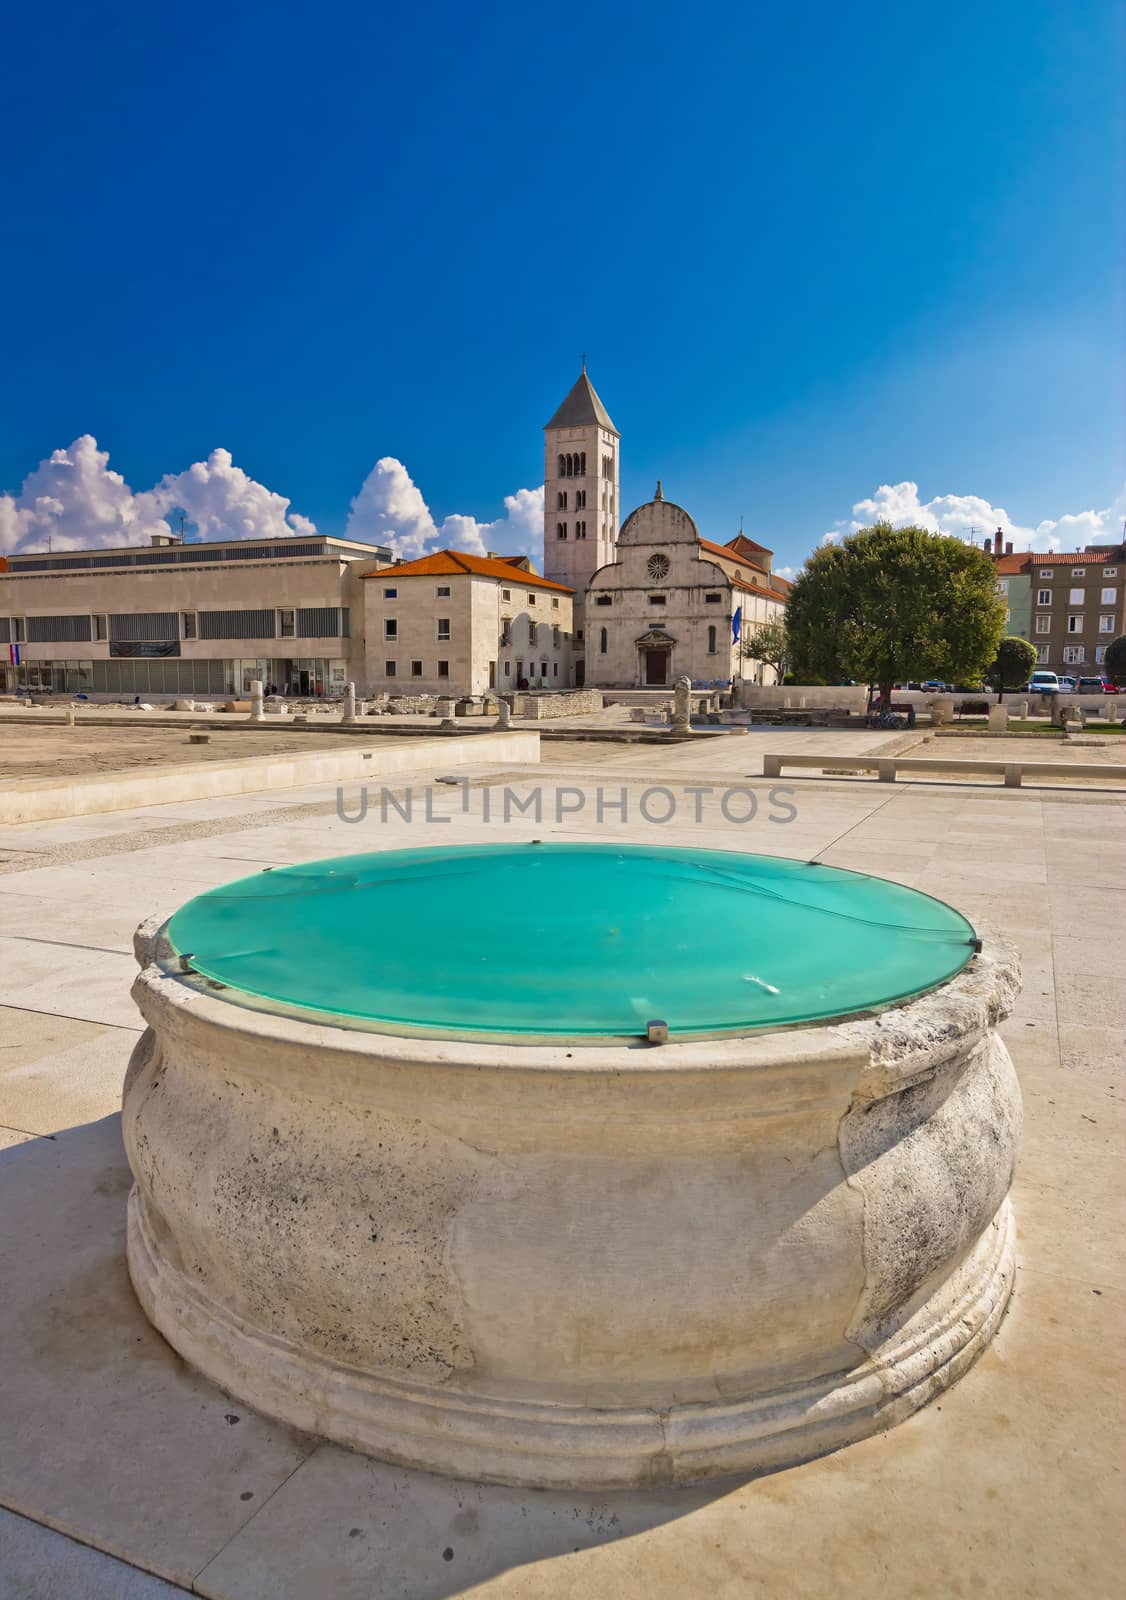 Zadar historic forum square view, Dalmatia, Croatia